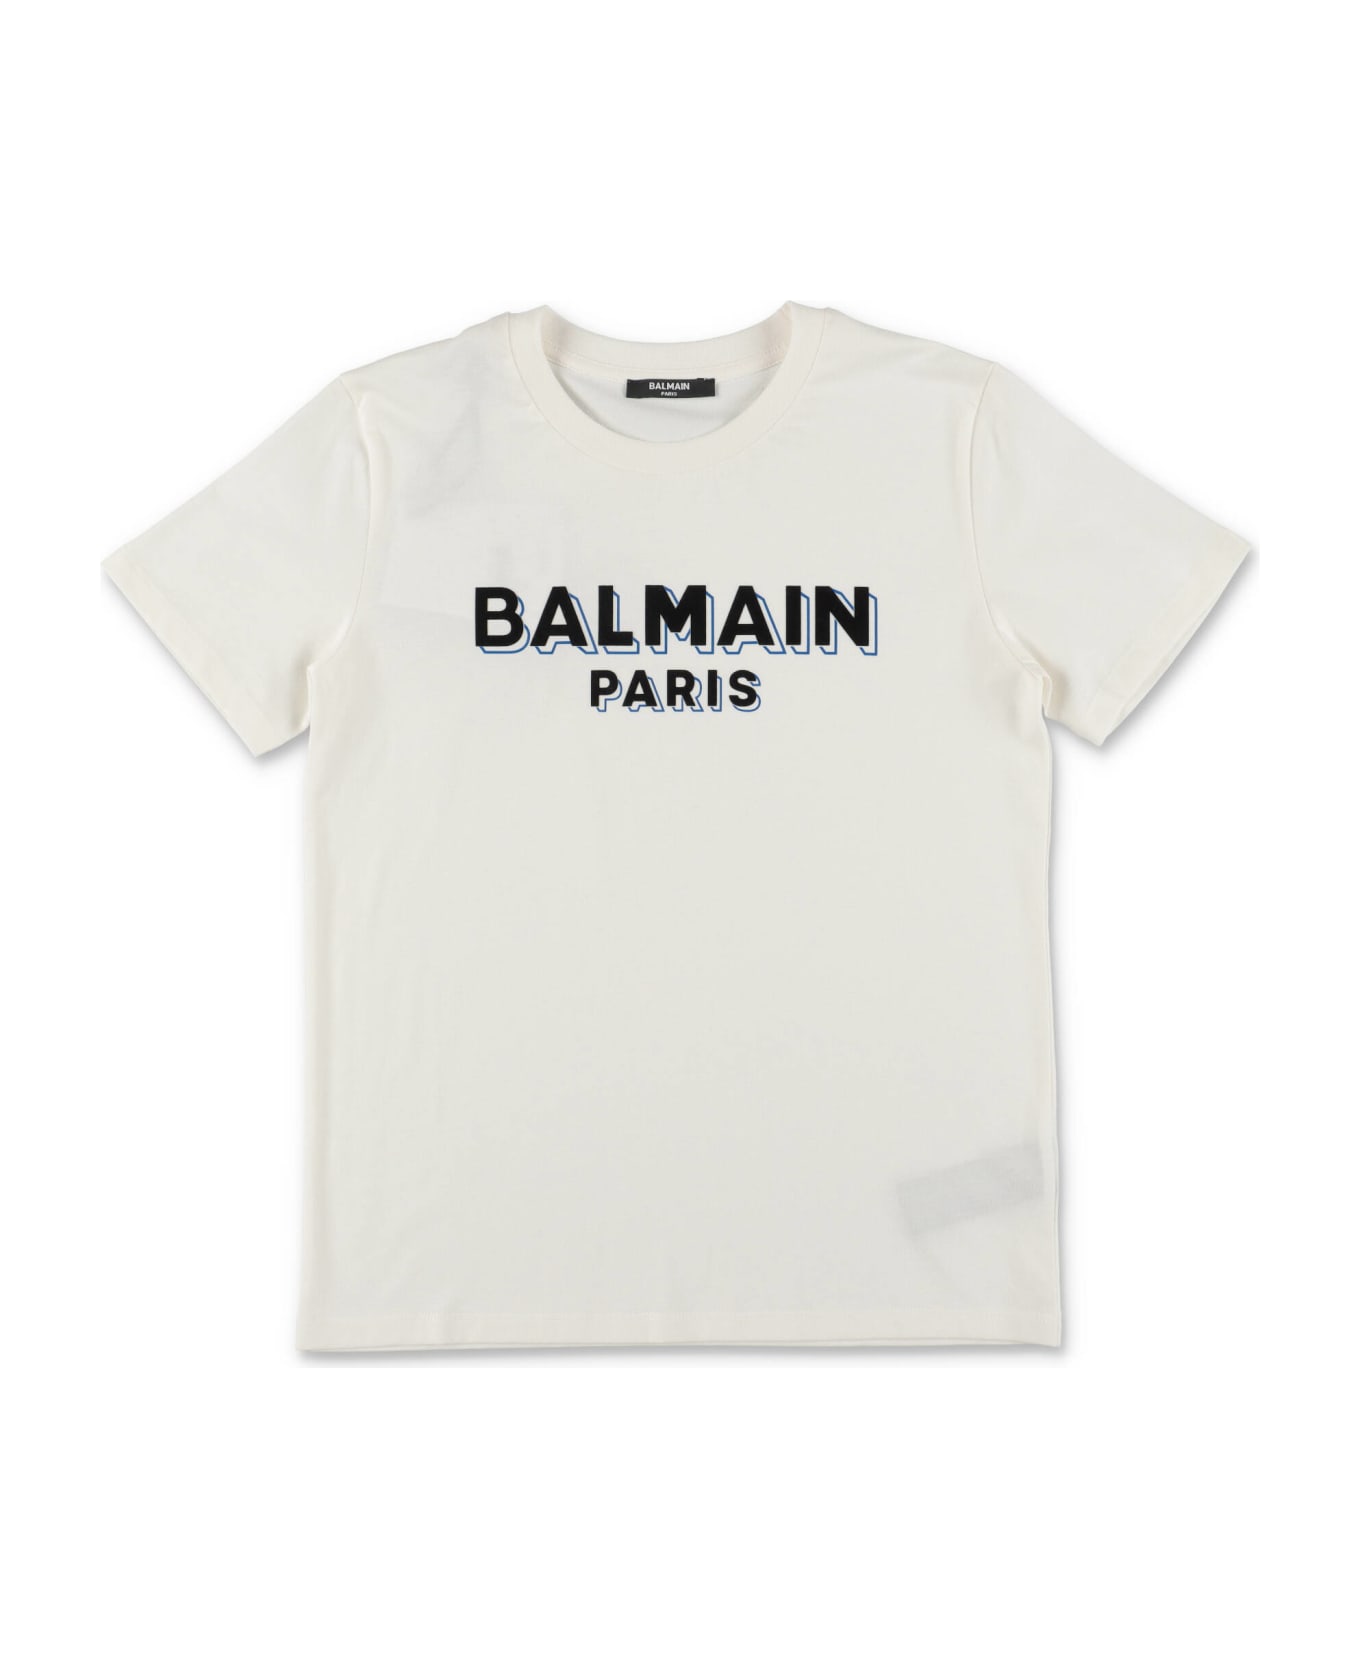 Balmain T-shirt Bianca In Jersey Di Cotone Bambino - Bianco Tシャツ＆ポロシャツ